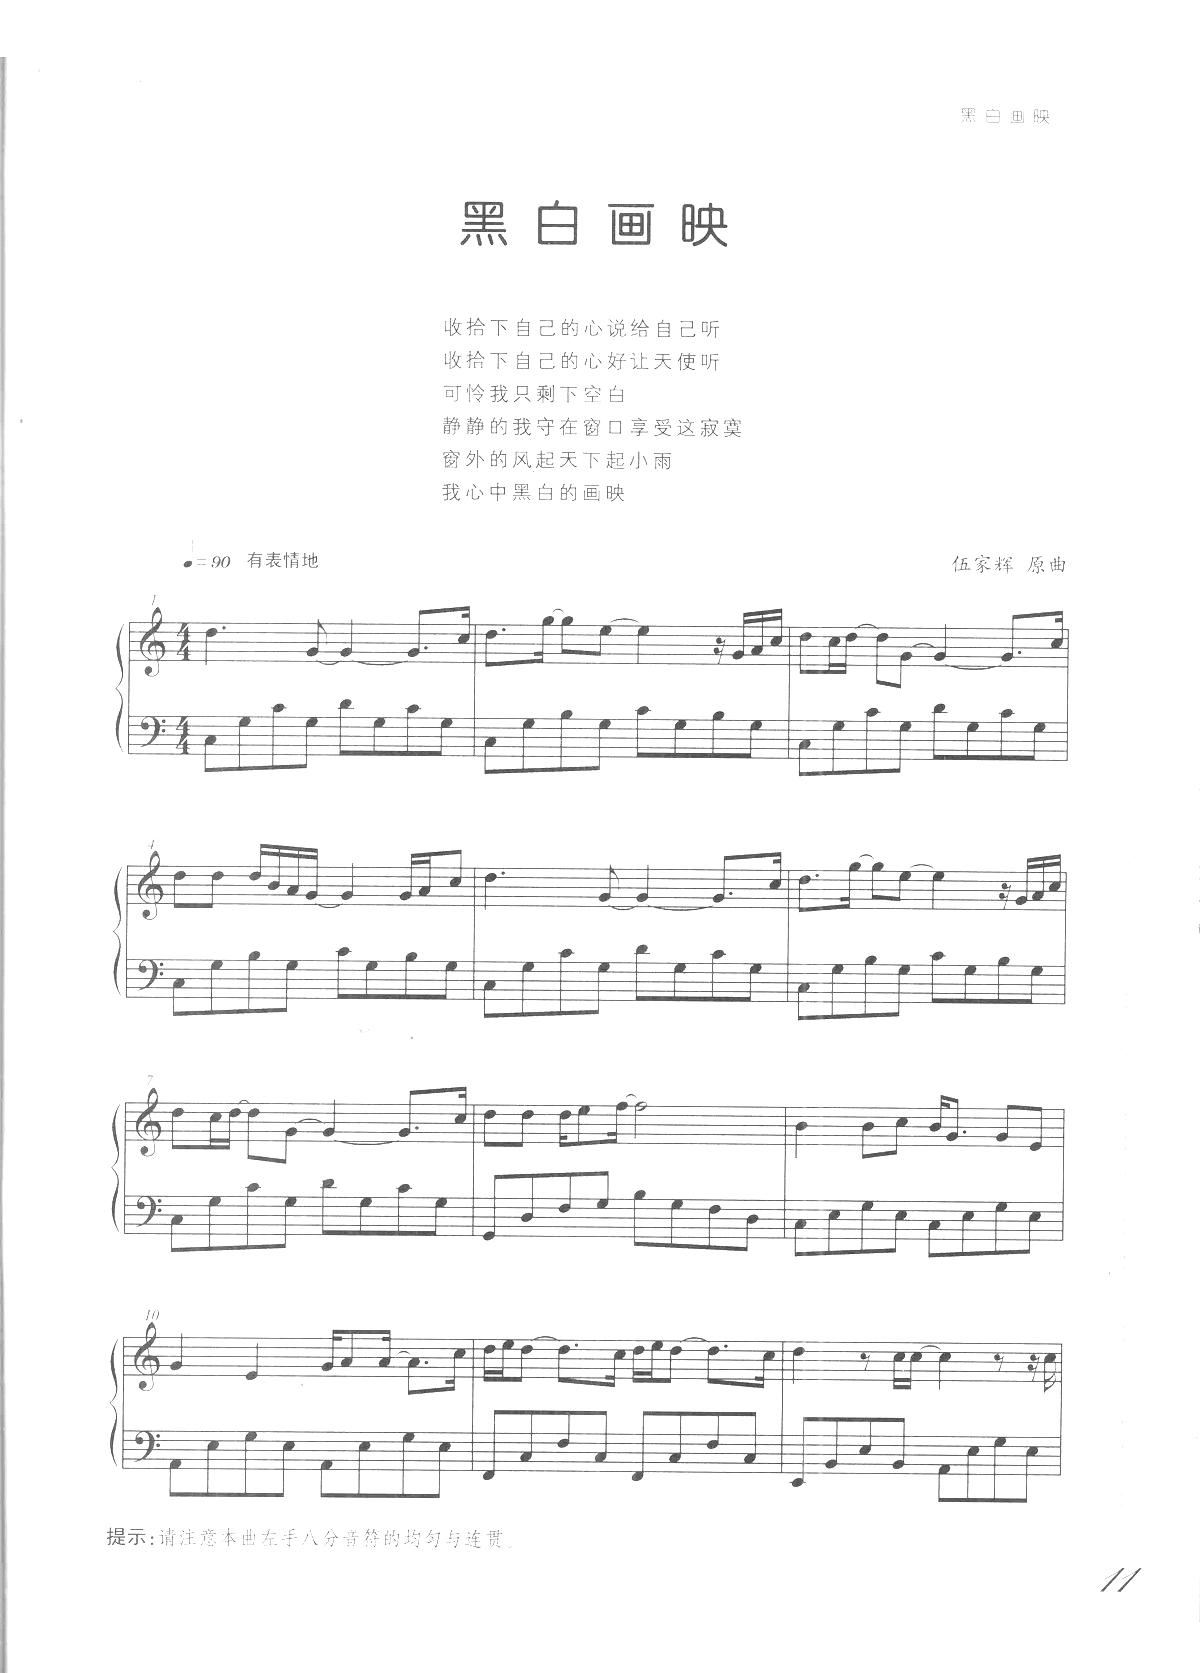 黑白画映 吻别 张学友歌曲改编的钢琴曲(钢琴谱)1